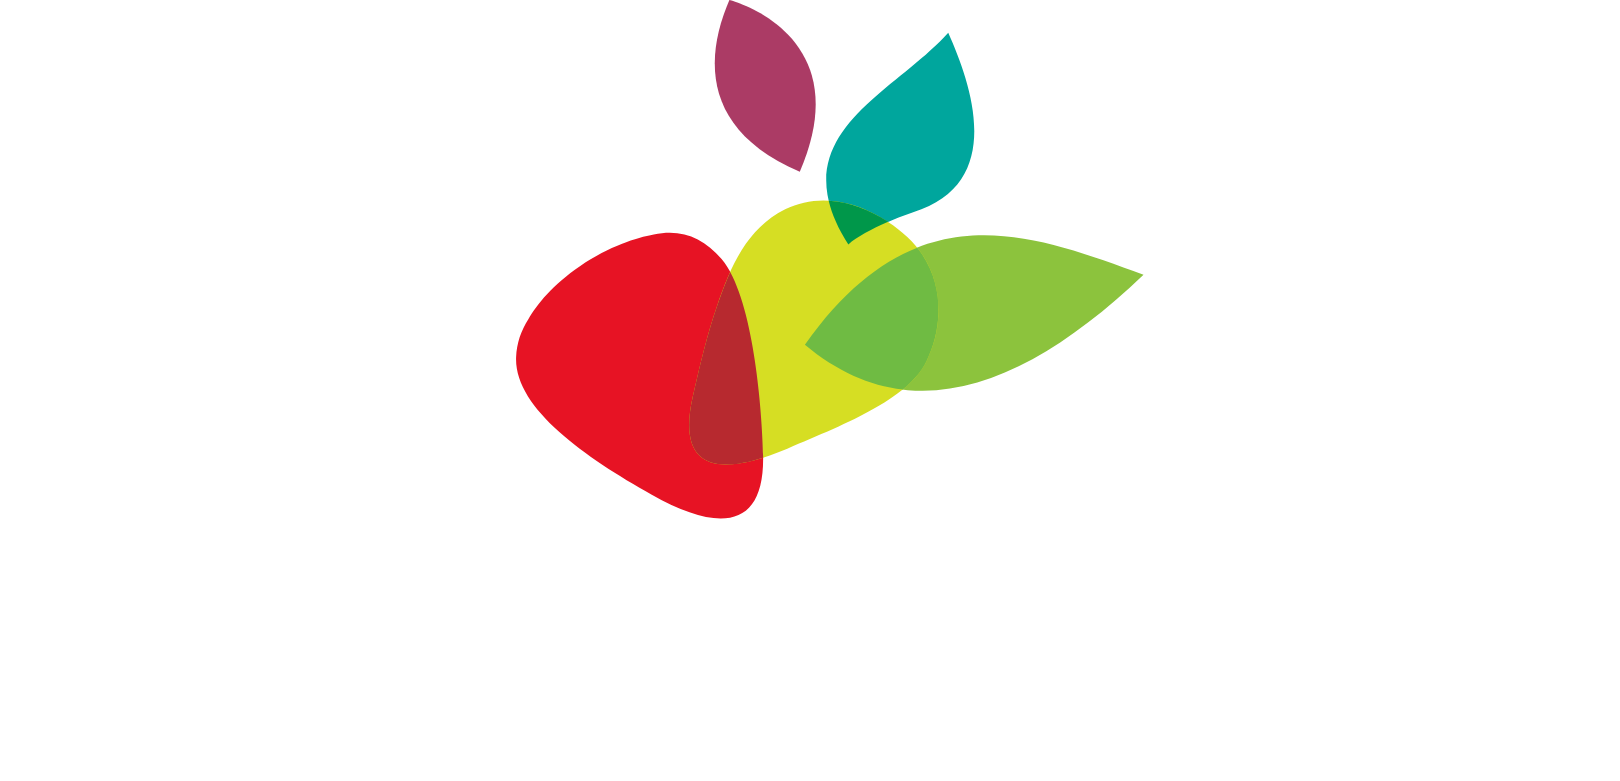 J.M. Smucker Company logo grand pour les fonds sombres (PNG transparent)